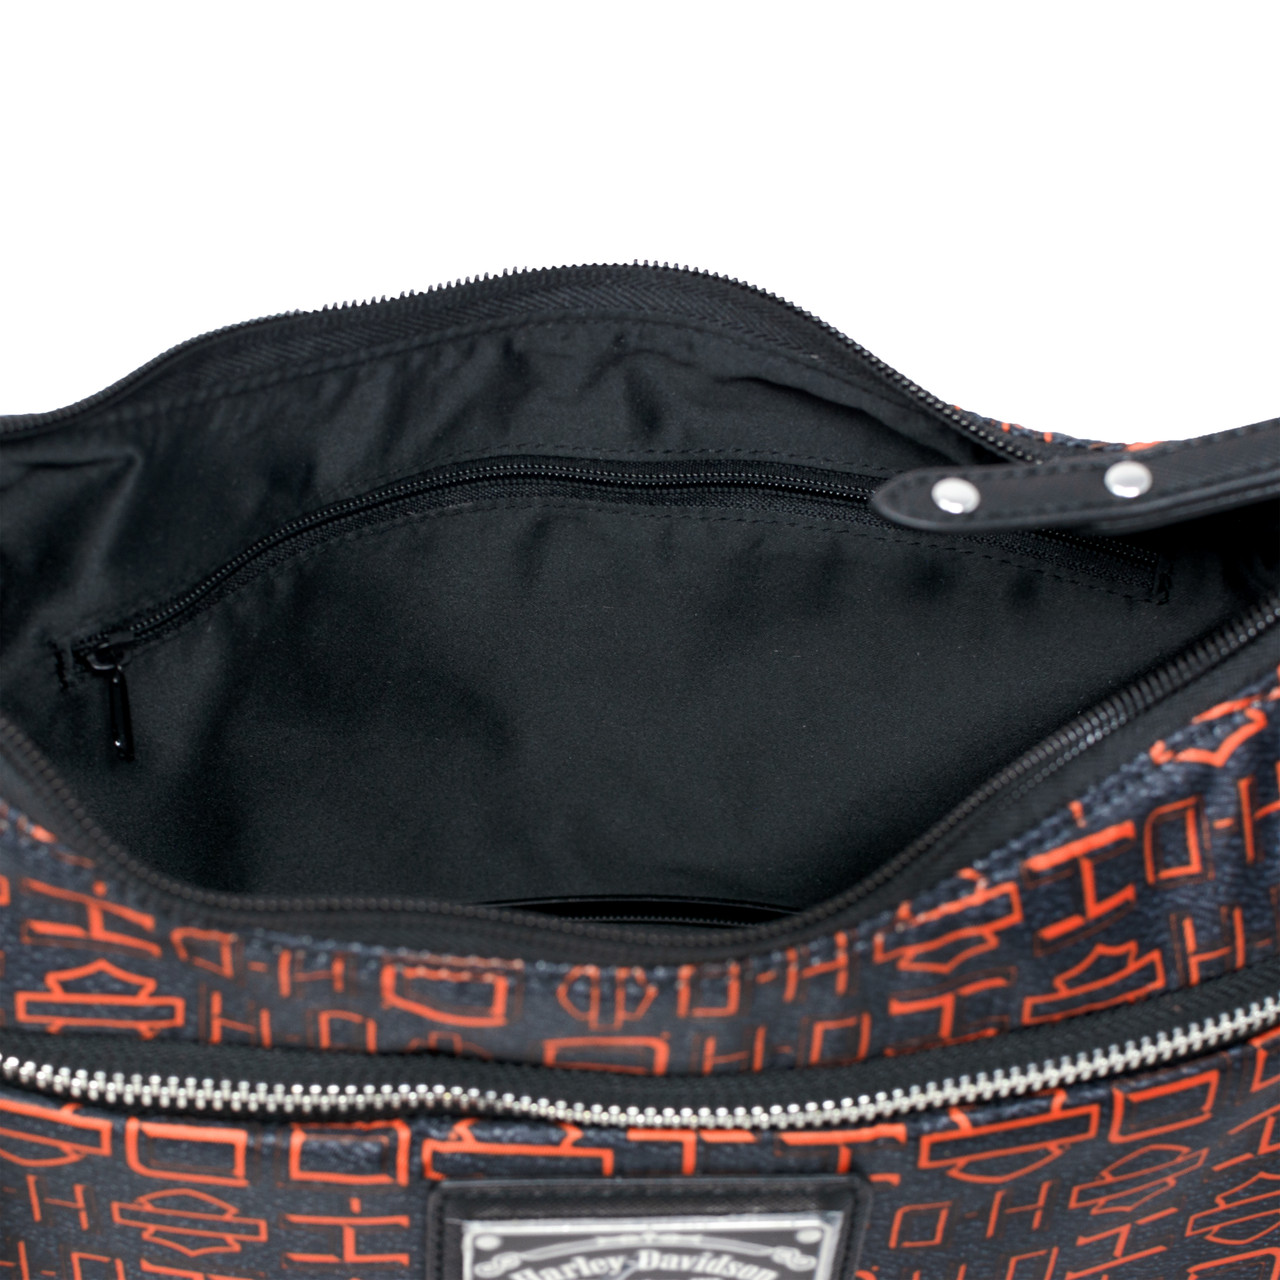 Harley-Davidson Orange Shoulder Bags for Women